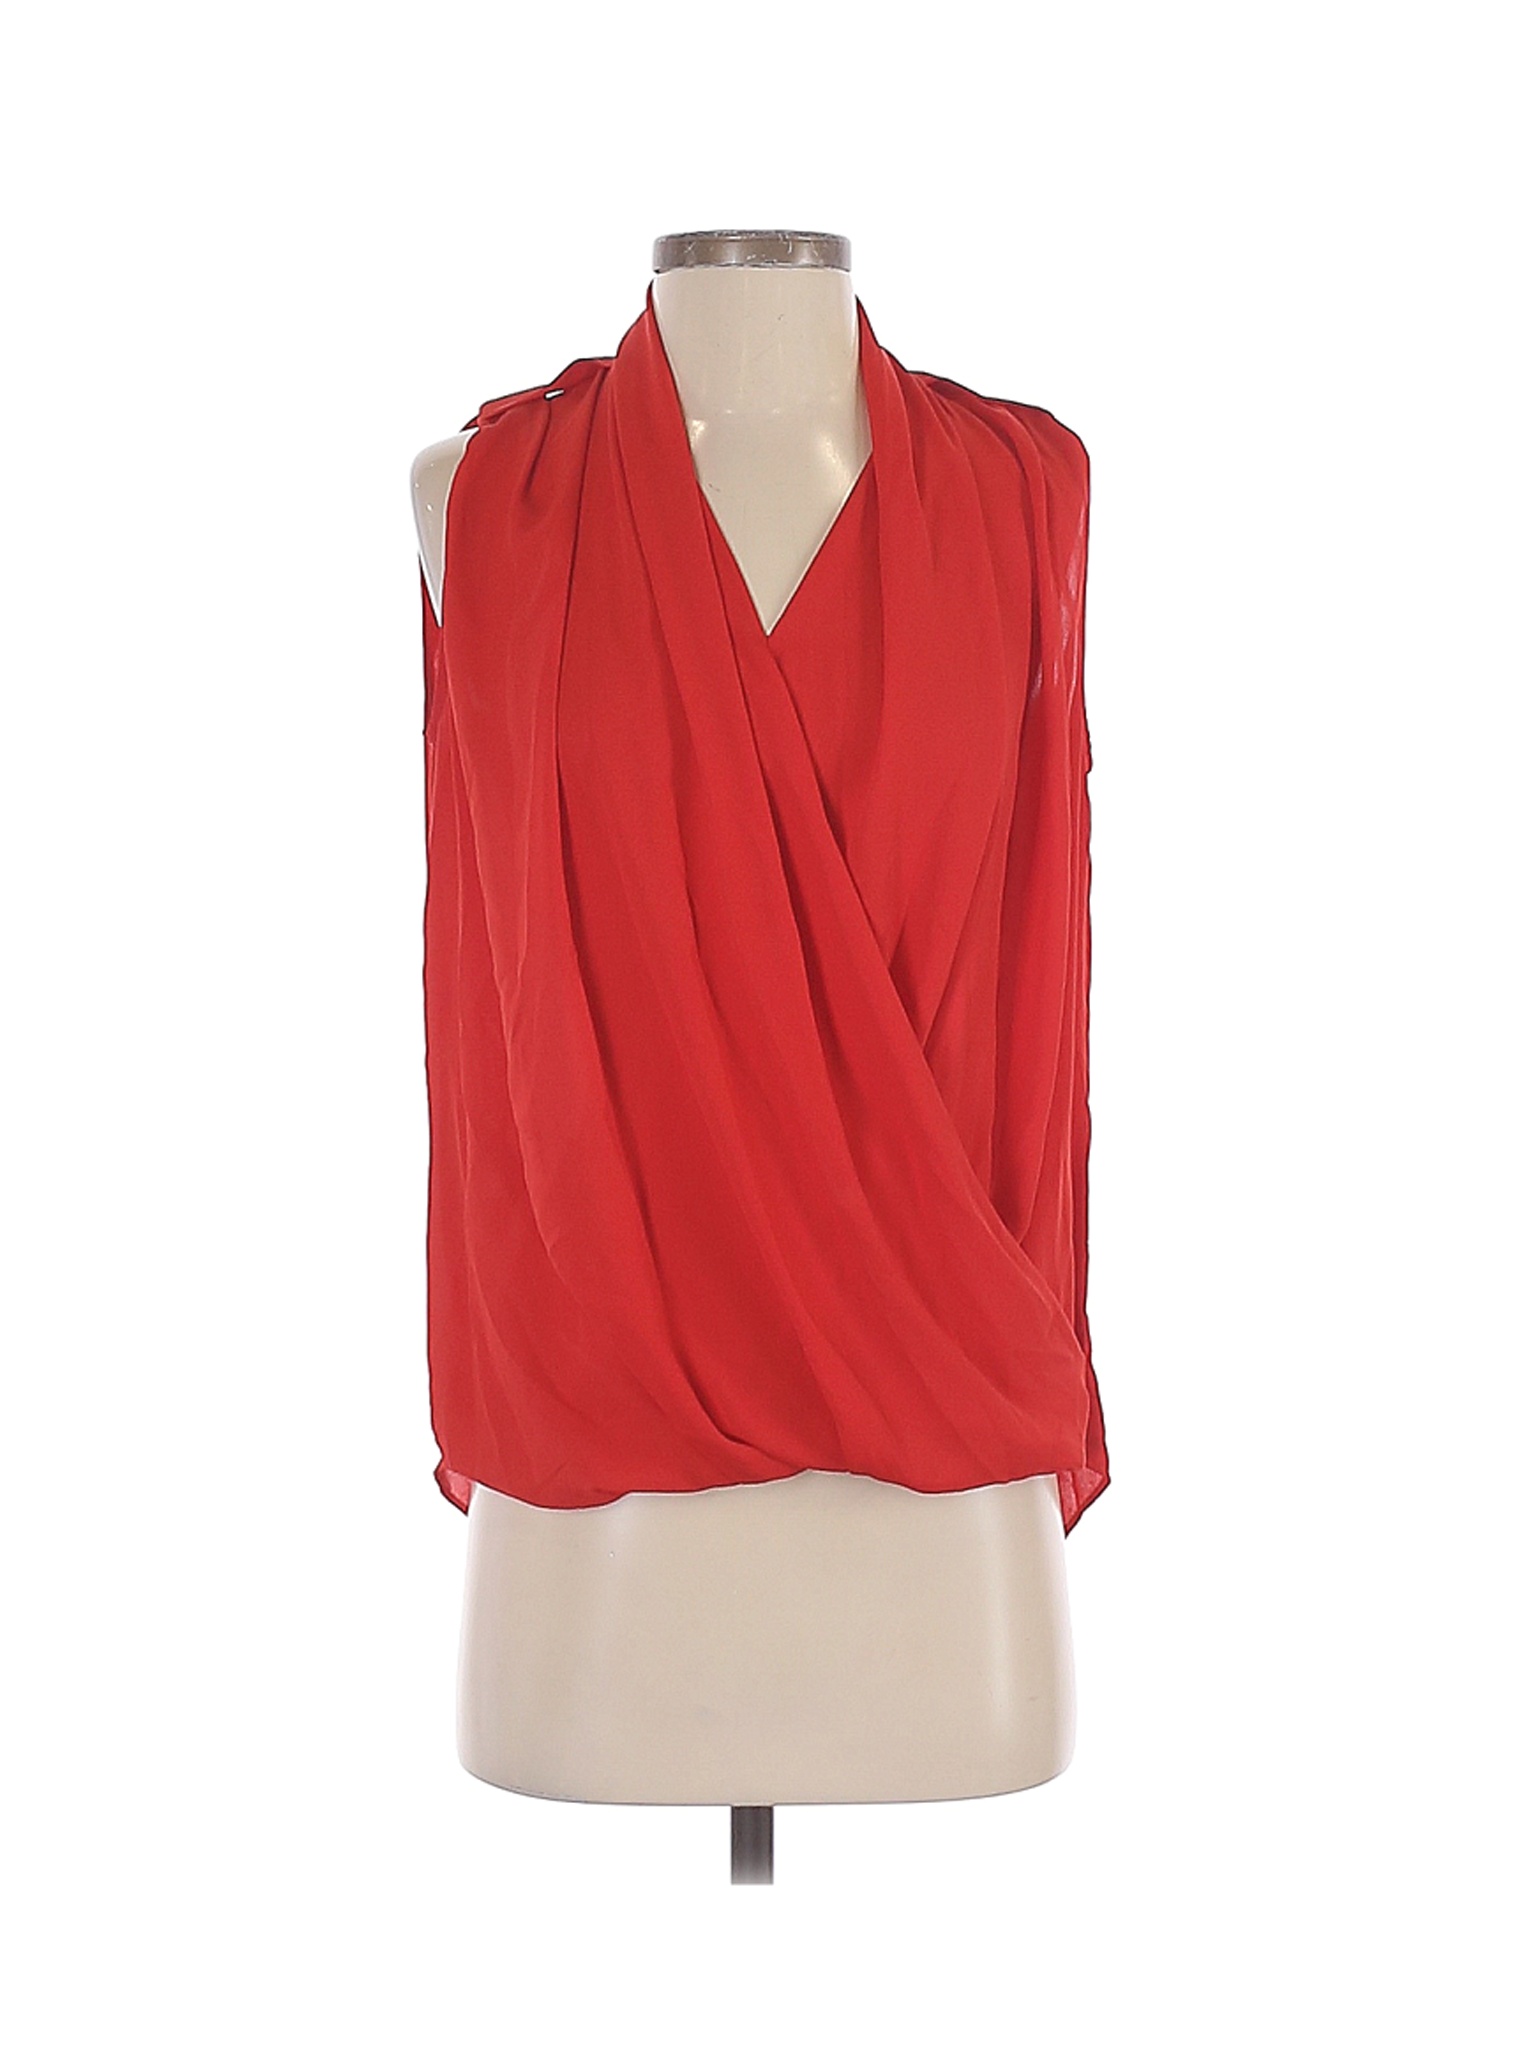 MNG Women Red Sleeveless Blouse S | eBay